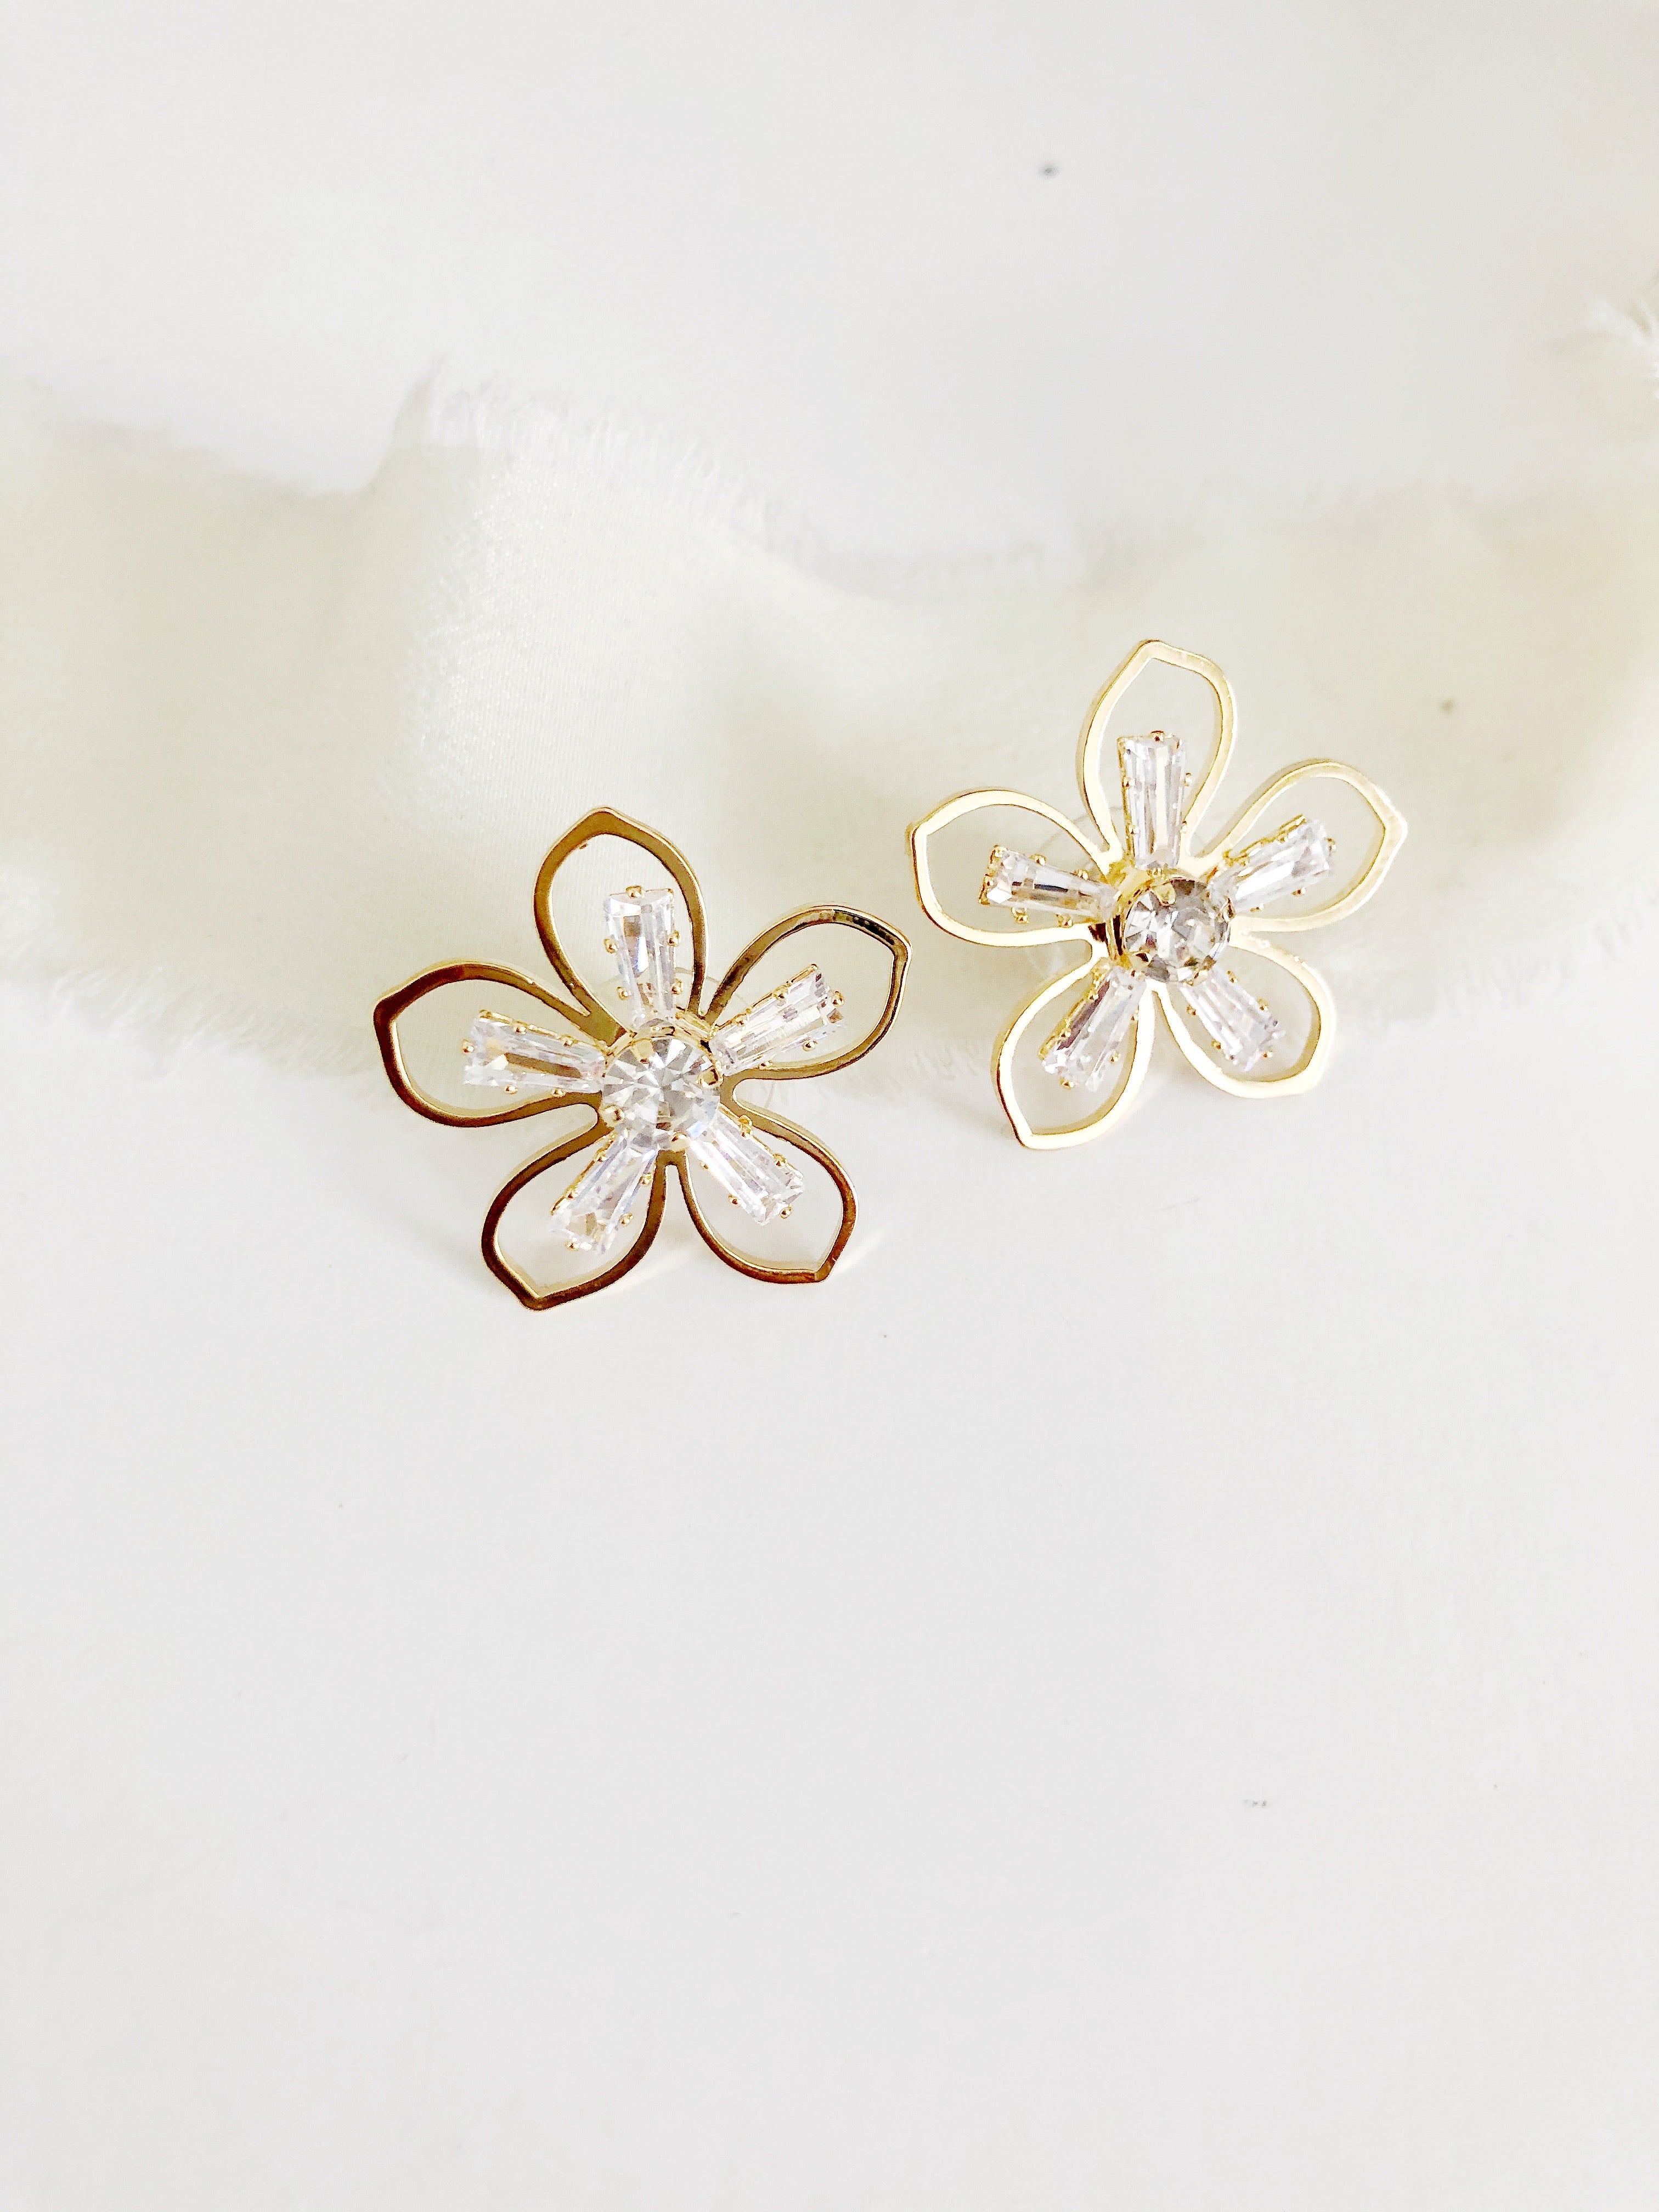 Daisy Gold Flower Stud  Wedding Earrings